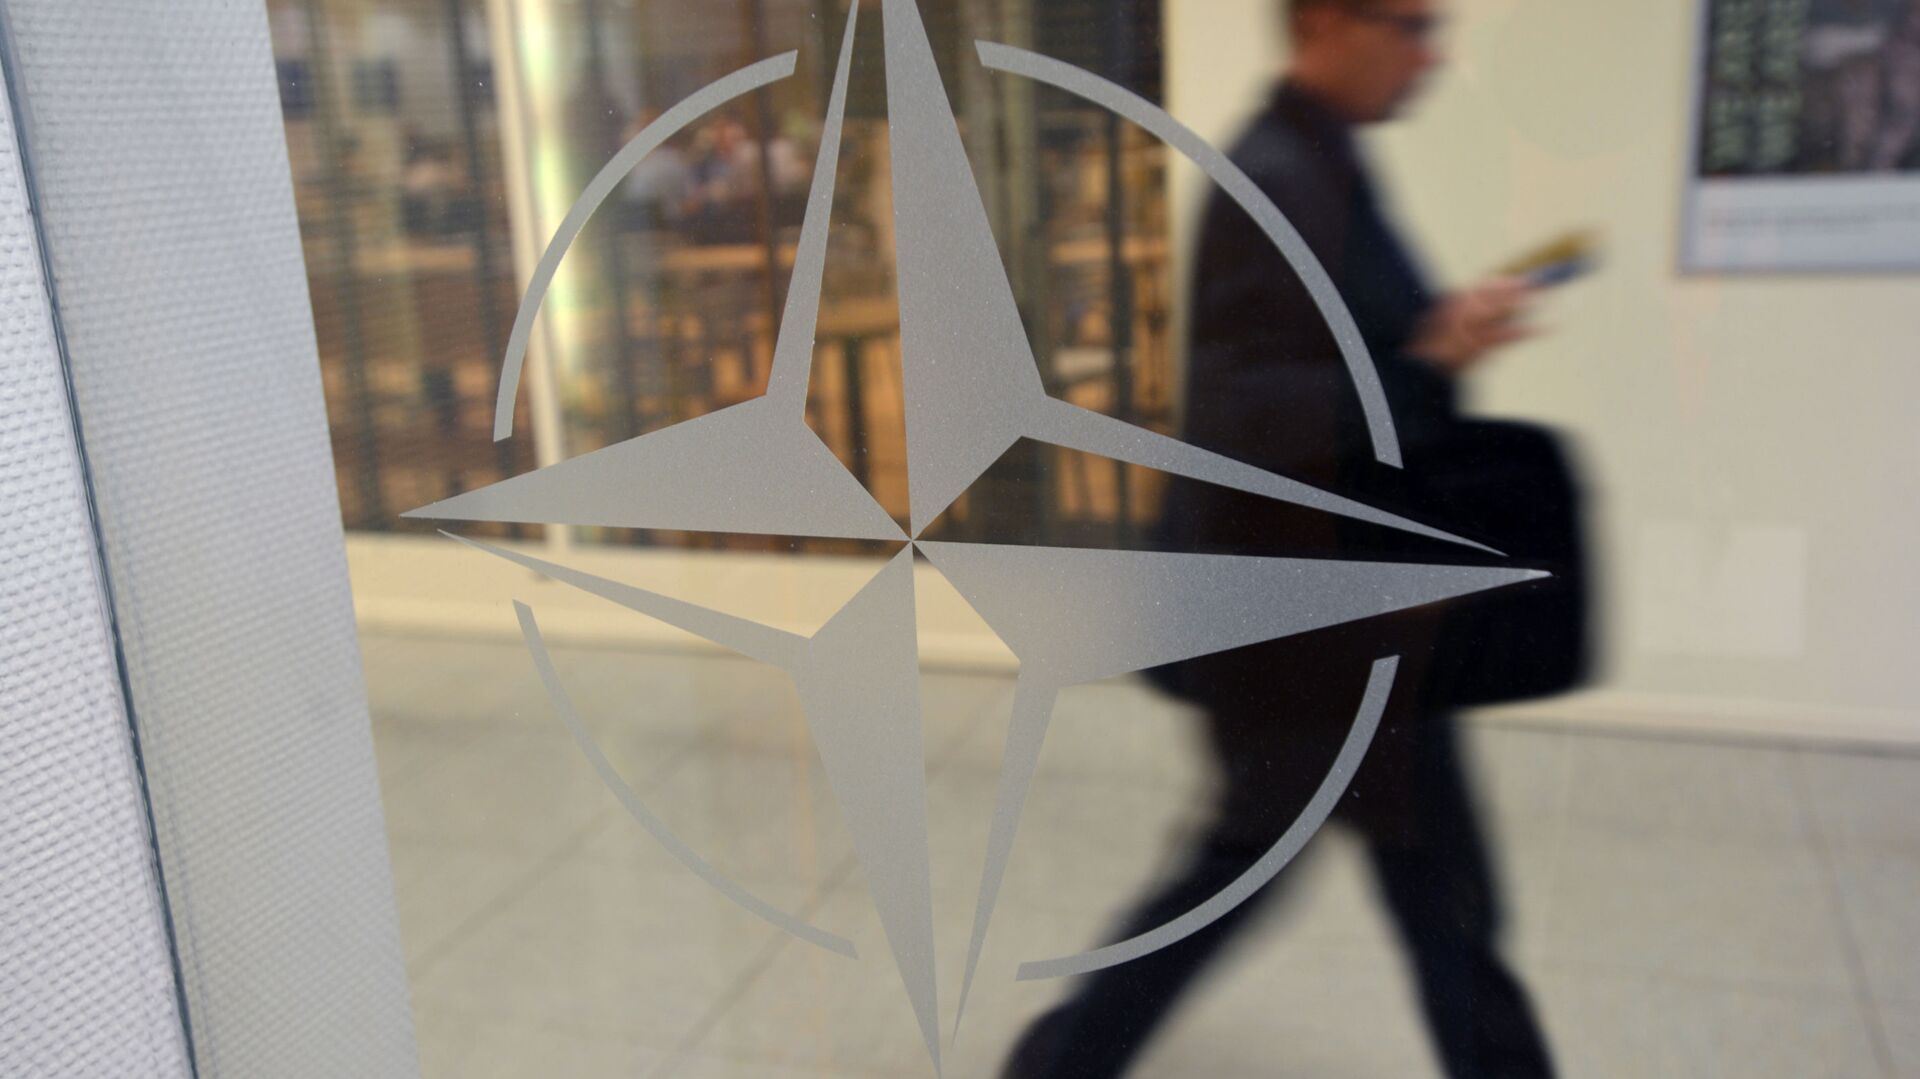 Эмблема организации в штаб-квартире НАТО в Брюсселе. - Sputnik Грузия, 1920, 27.12.2021